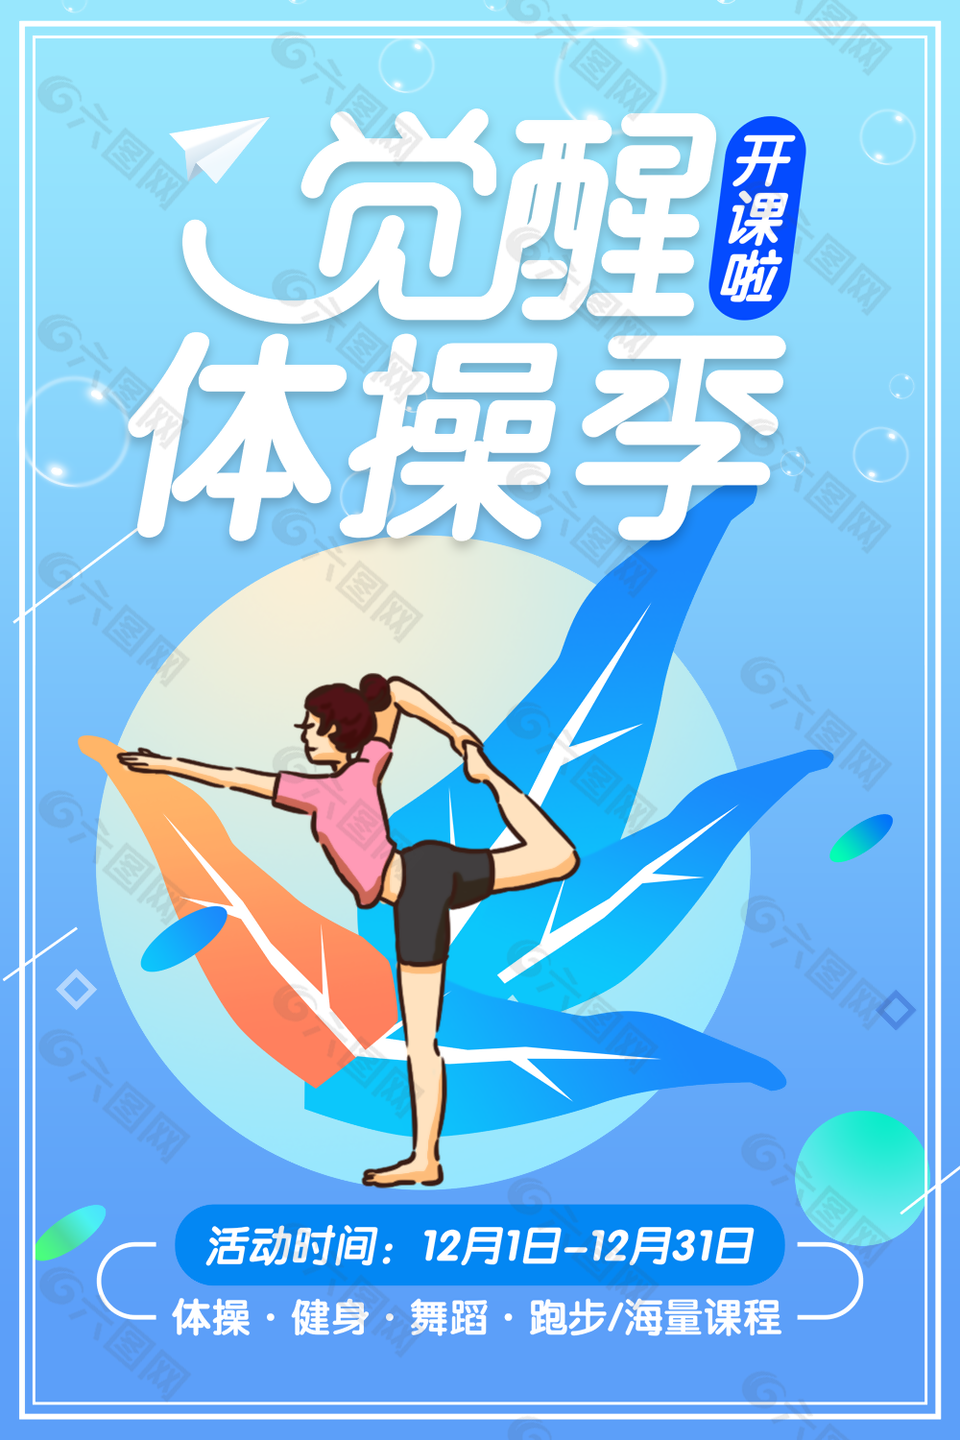 卡通扁平化体操季课程宣传海报图设计